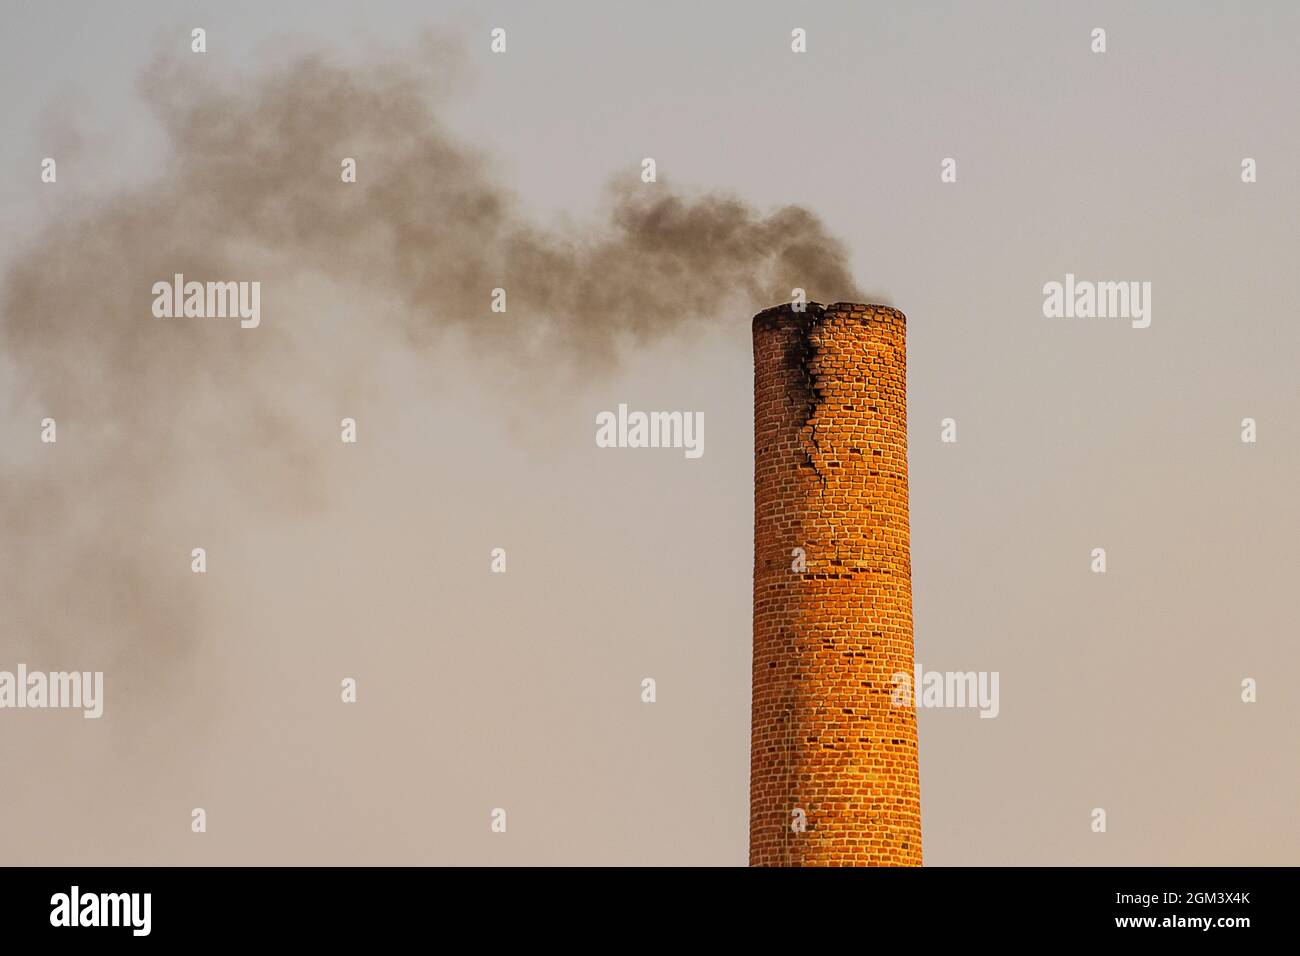 Cheminée industrielle émettant de la fumée noire et polluant l'environnement. Banque D'Images